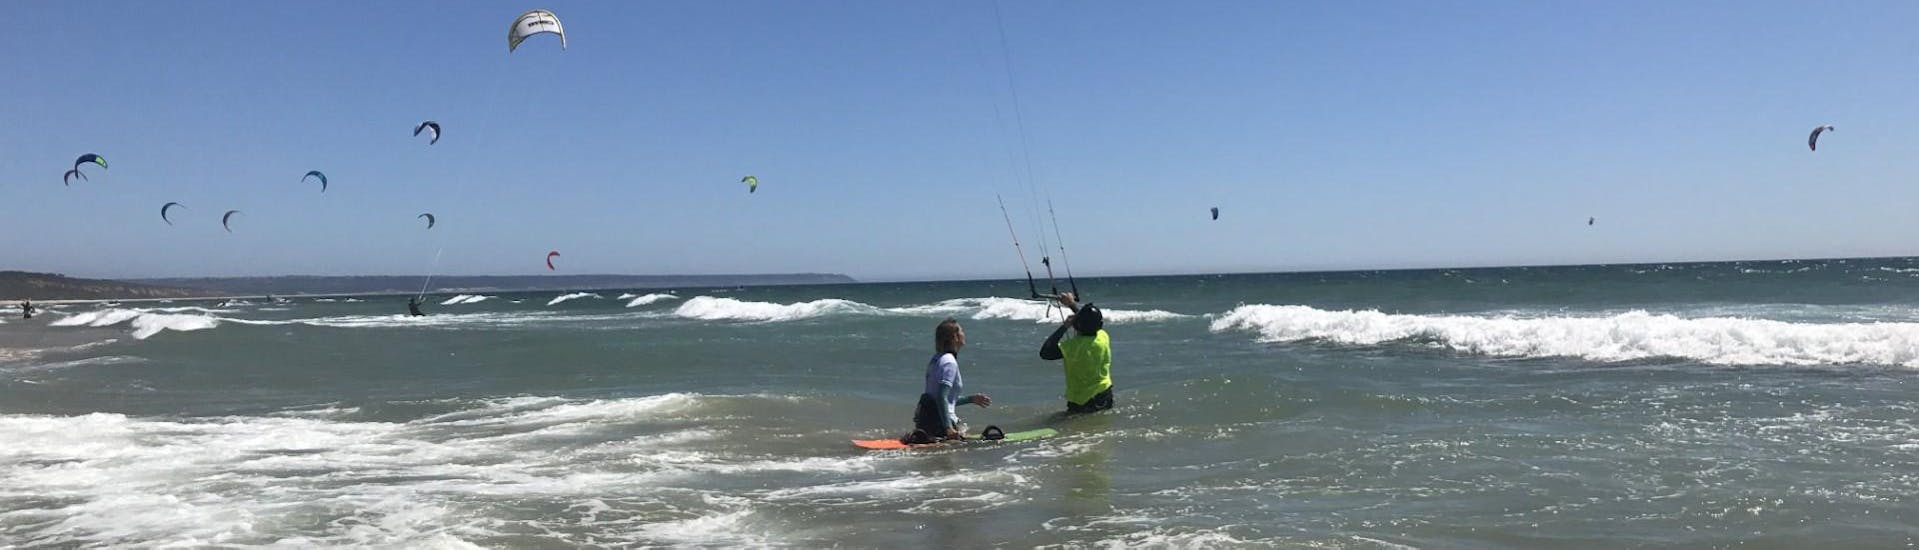 Lezioni private di kitesurf a Costa da Caparica da 8 anni.